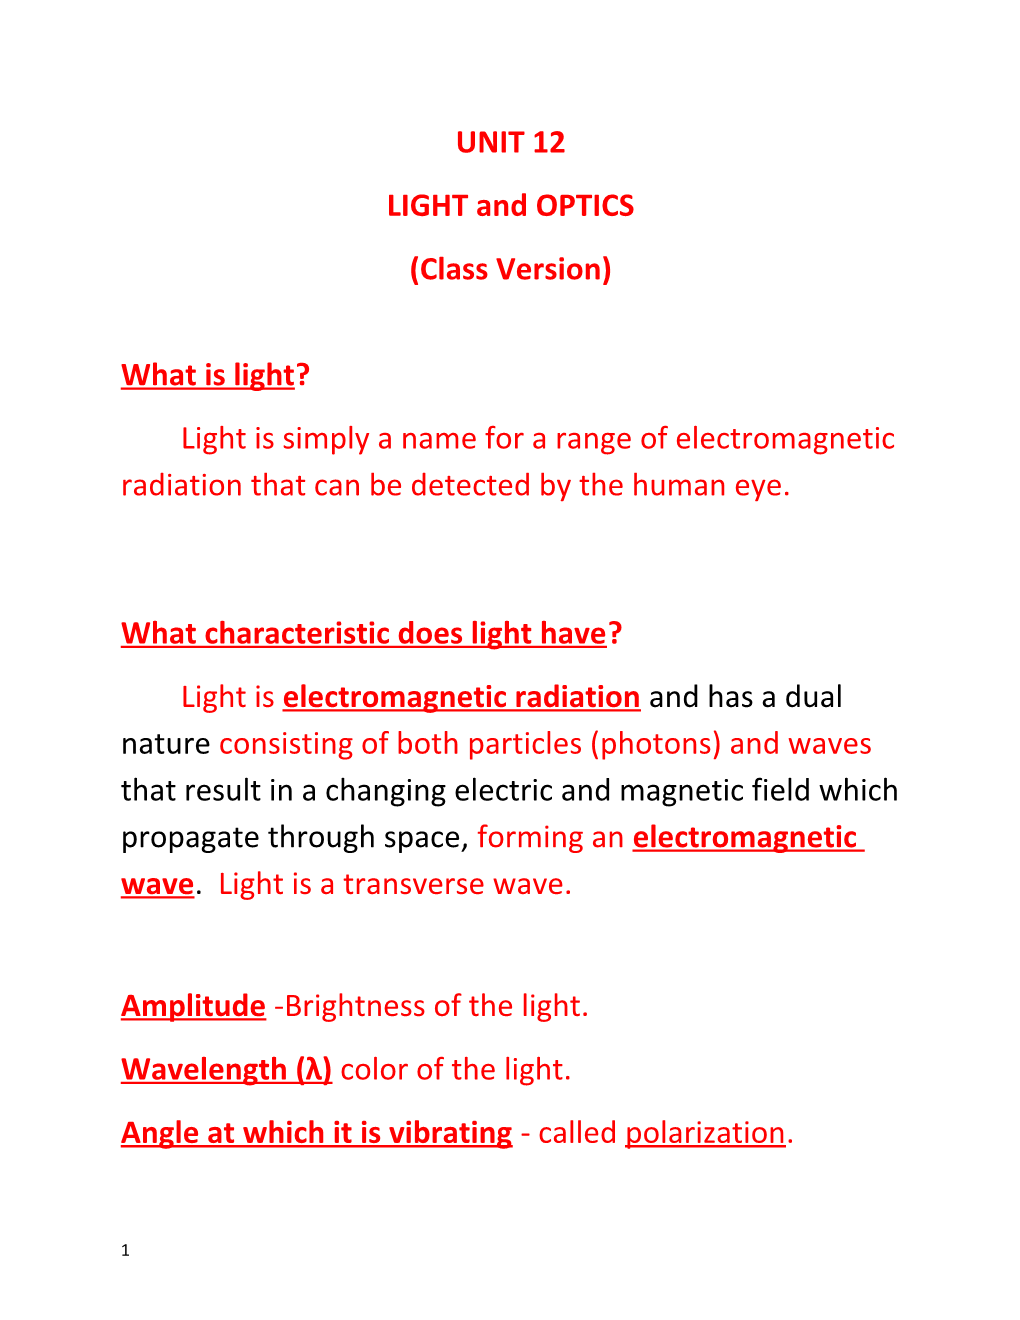 LIGHT and OPTICS